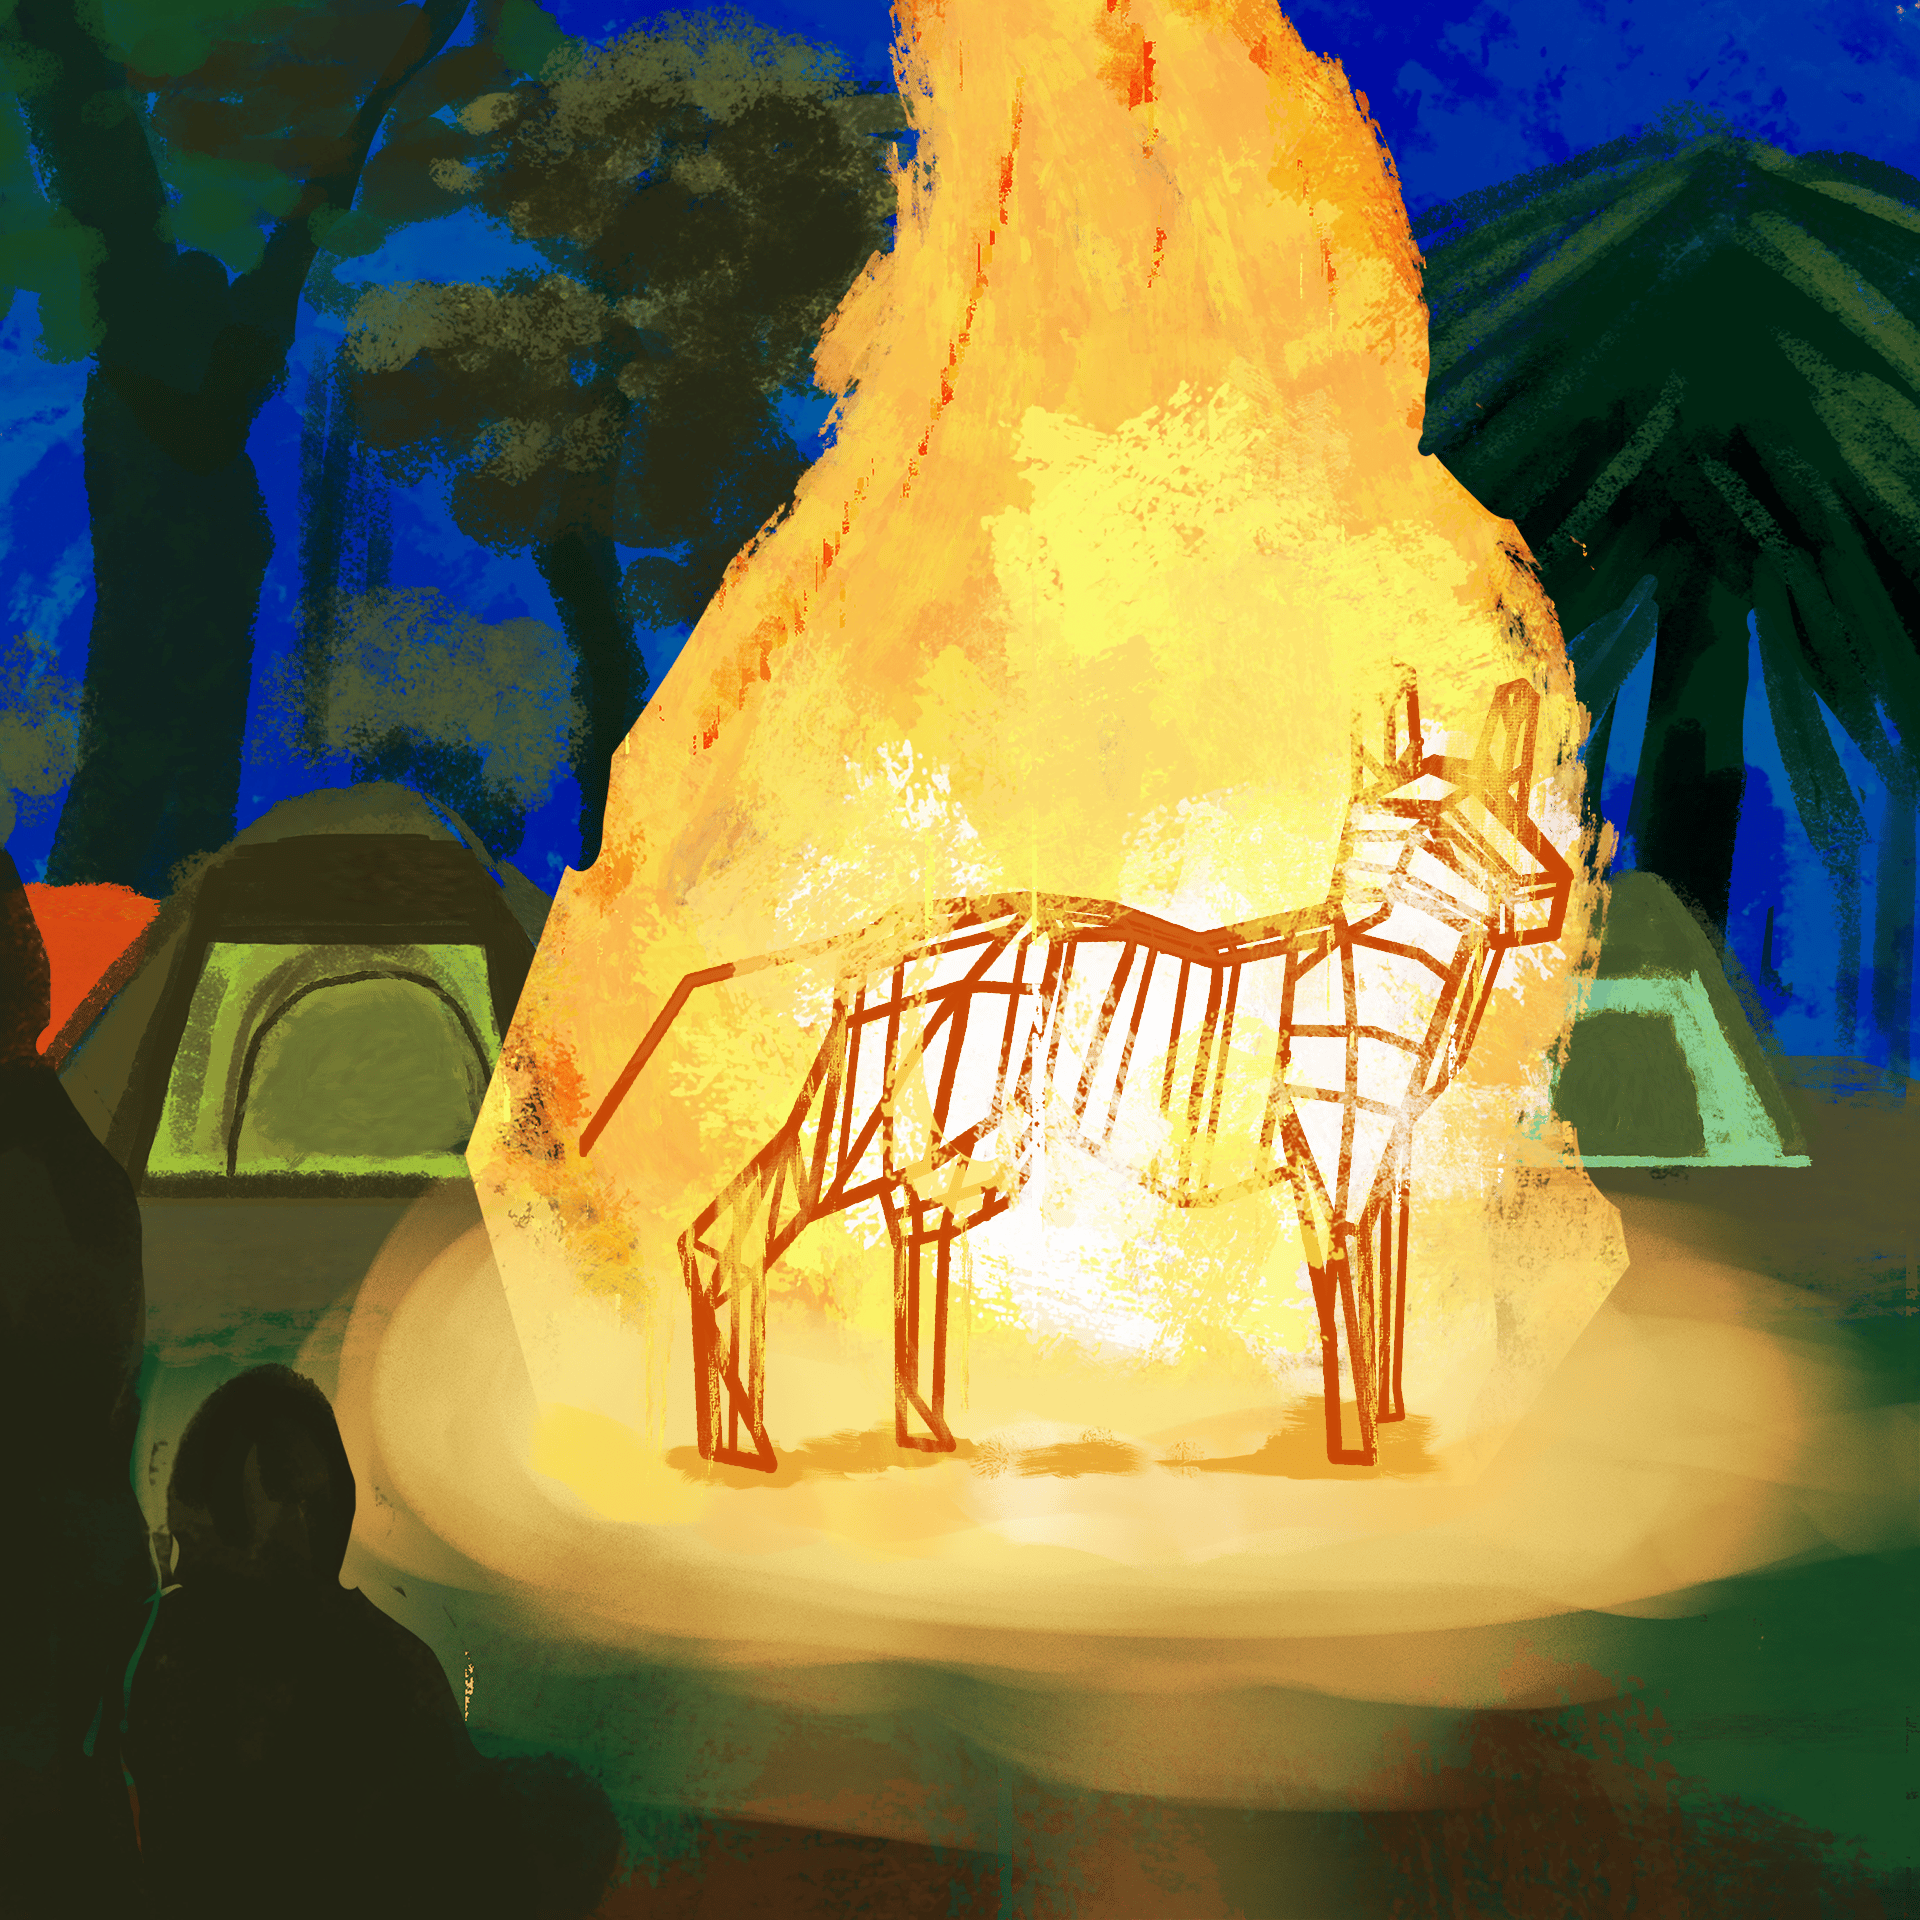 rysunek: w żółtych płomieniach stoi sylweta dużego psa